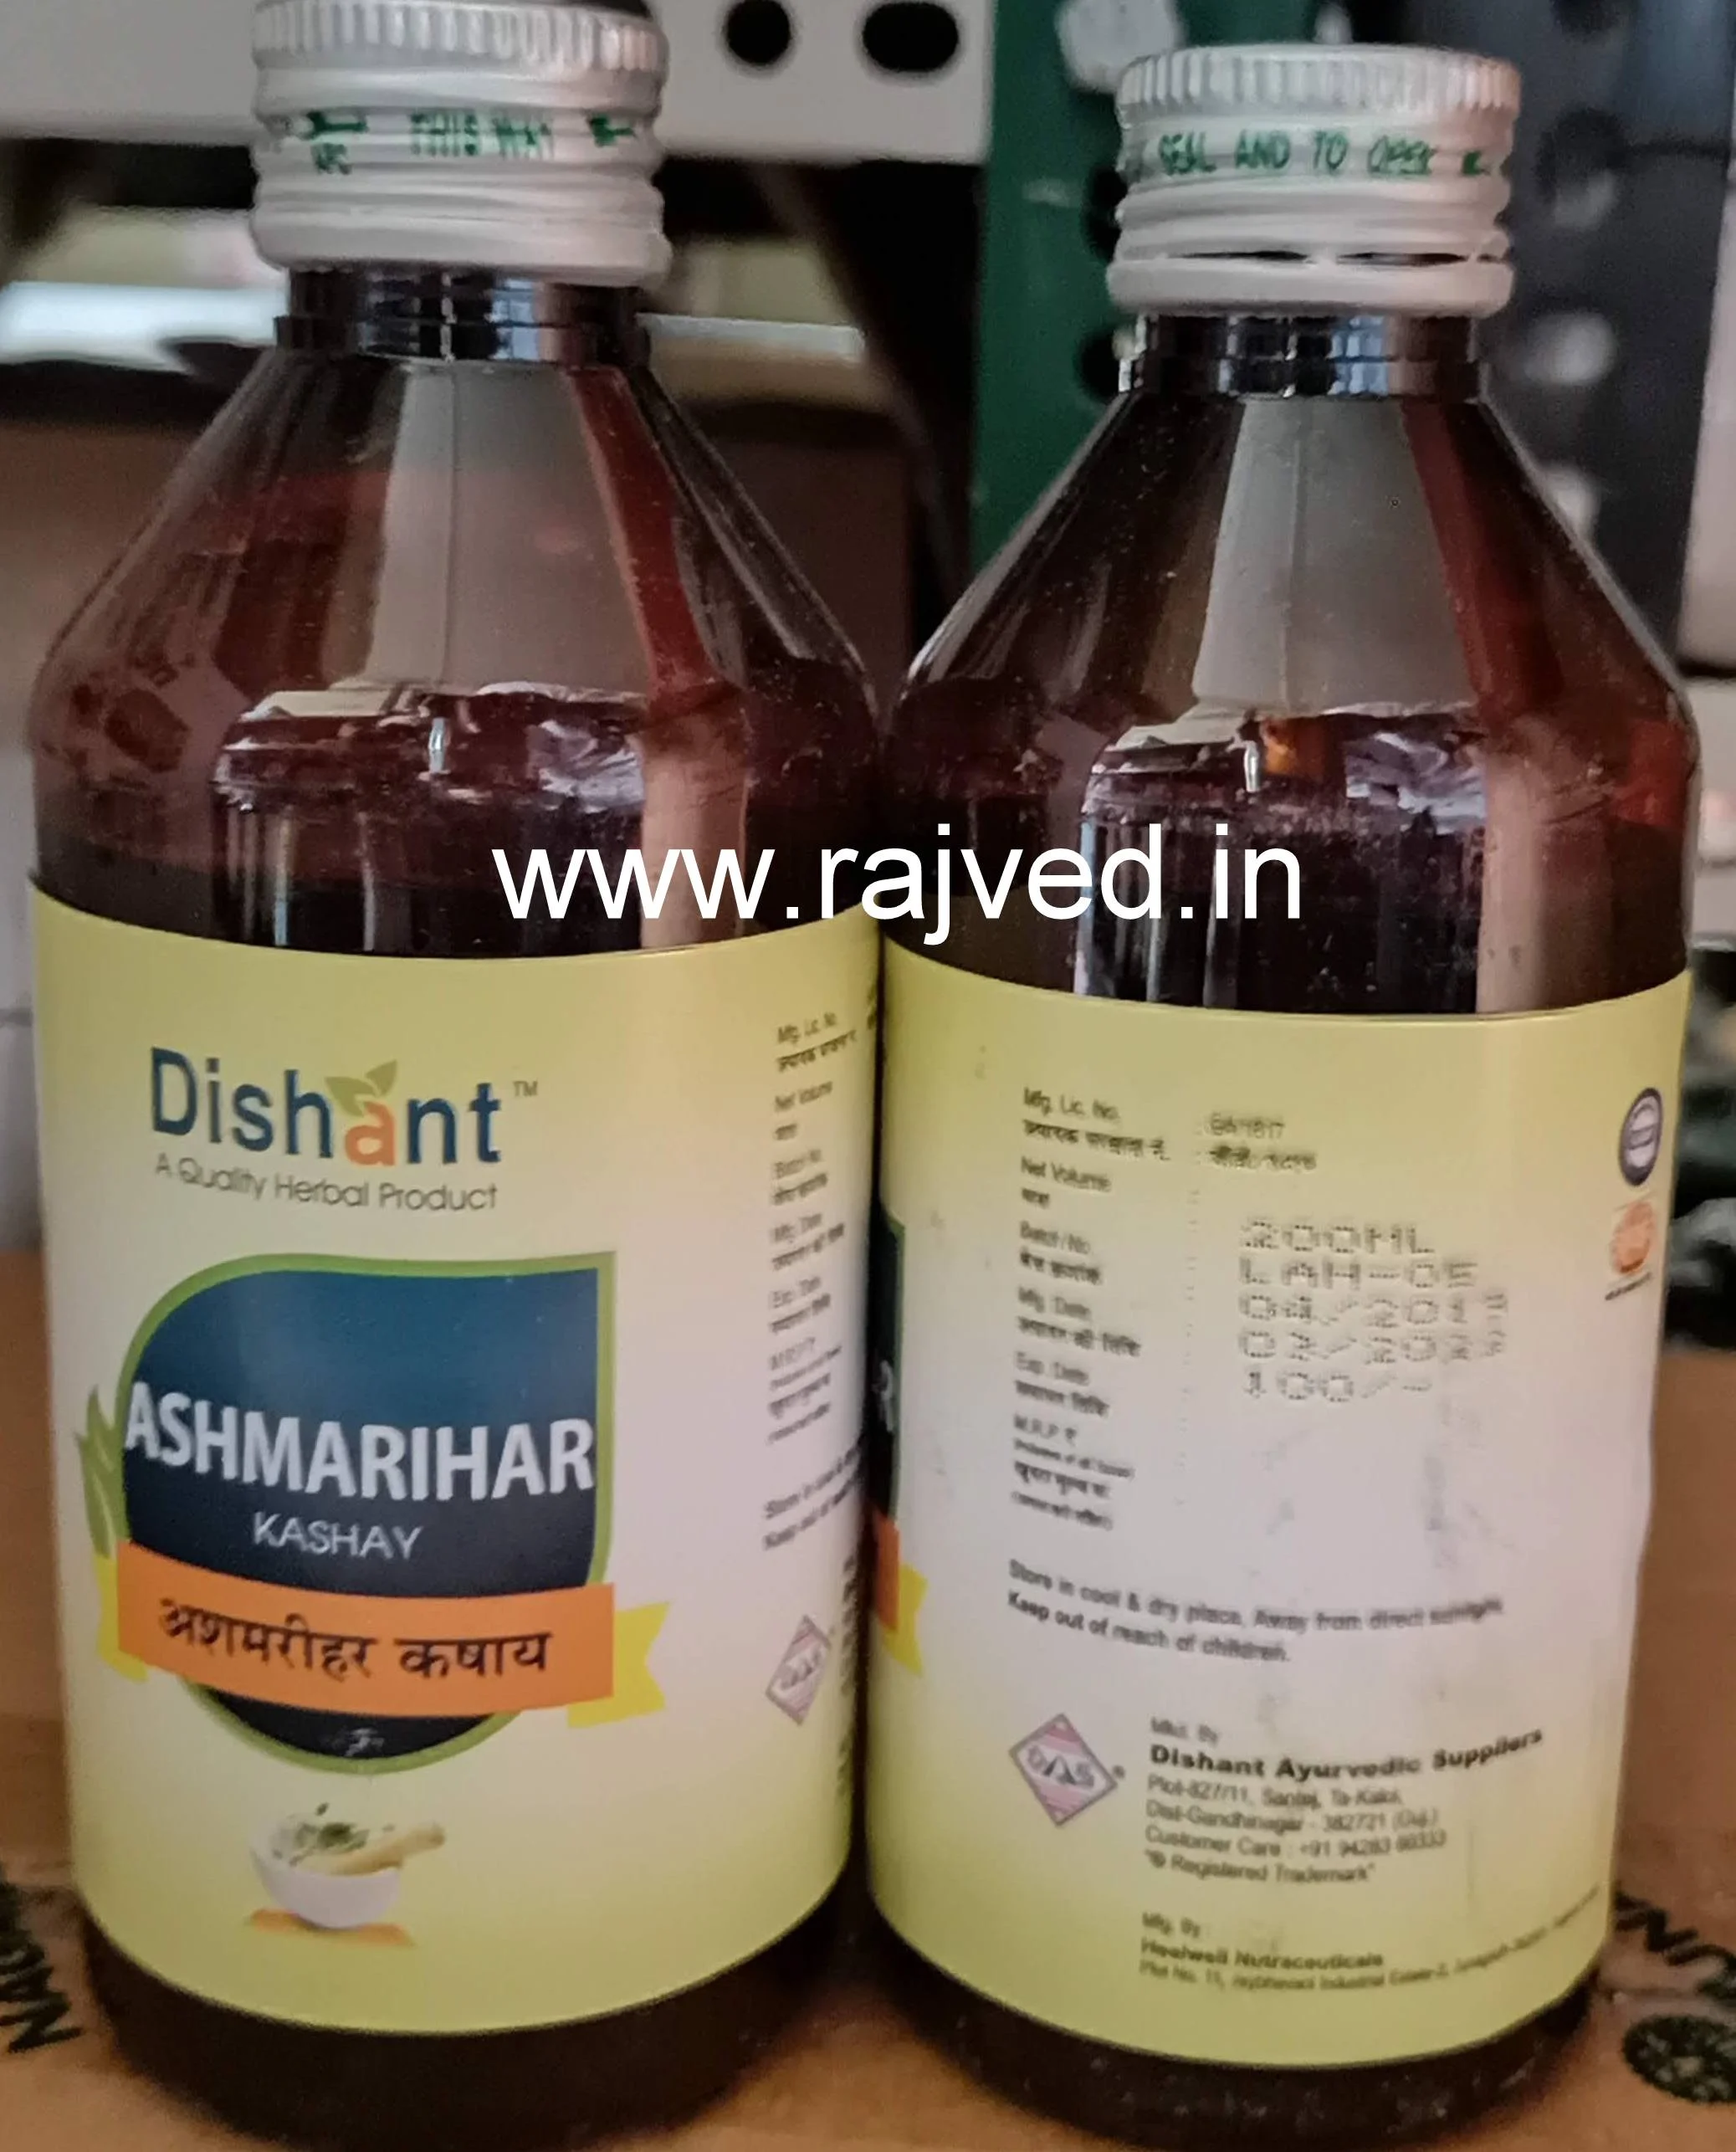 ashmarihar kashay 400ml dishant ayurvedic suppliers